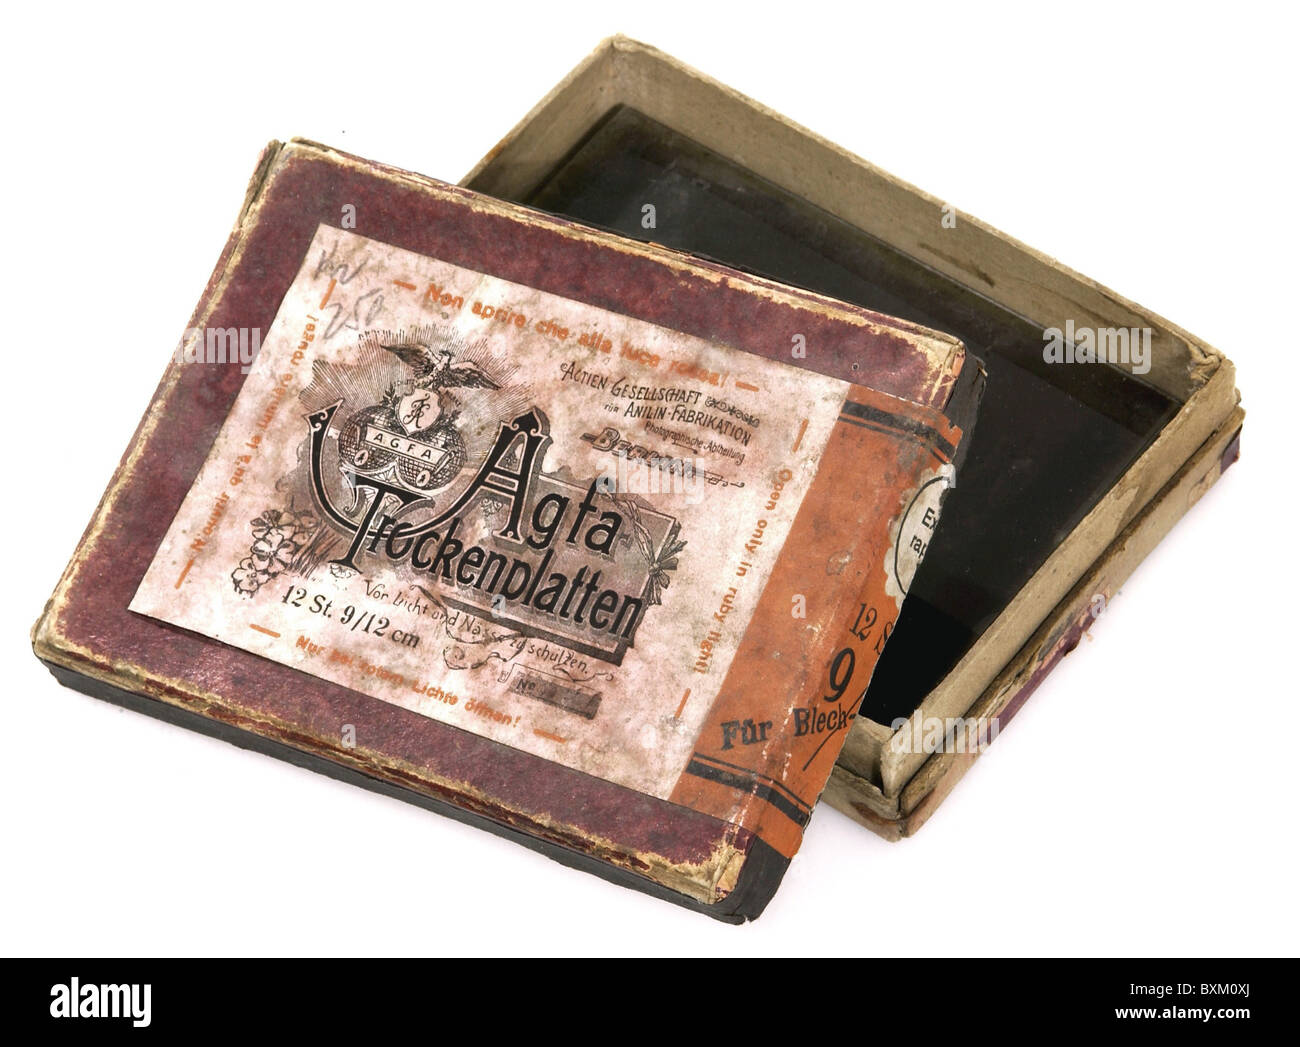 Fotografie, Zubehör, Schachtel mit 12 Glasnegative, Format 9 x 12 cm, Agfa, Berlin, Deutschland, um 1899, Zusatzrechte-Clearenzen-nicht lieferbar Stockfoto